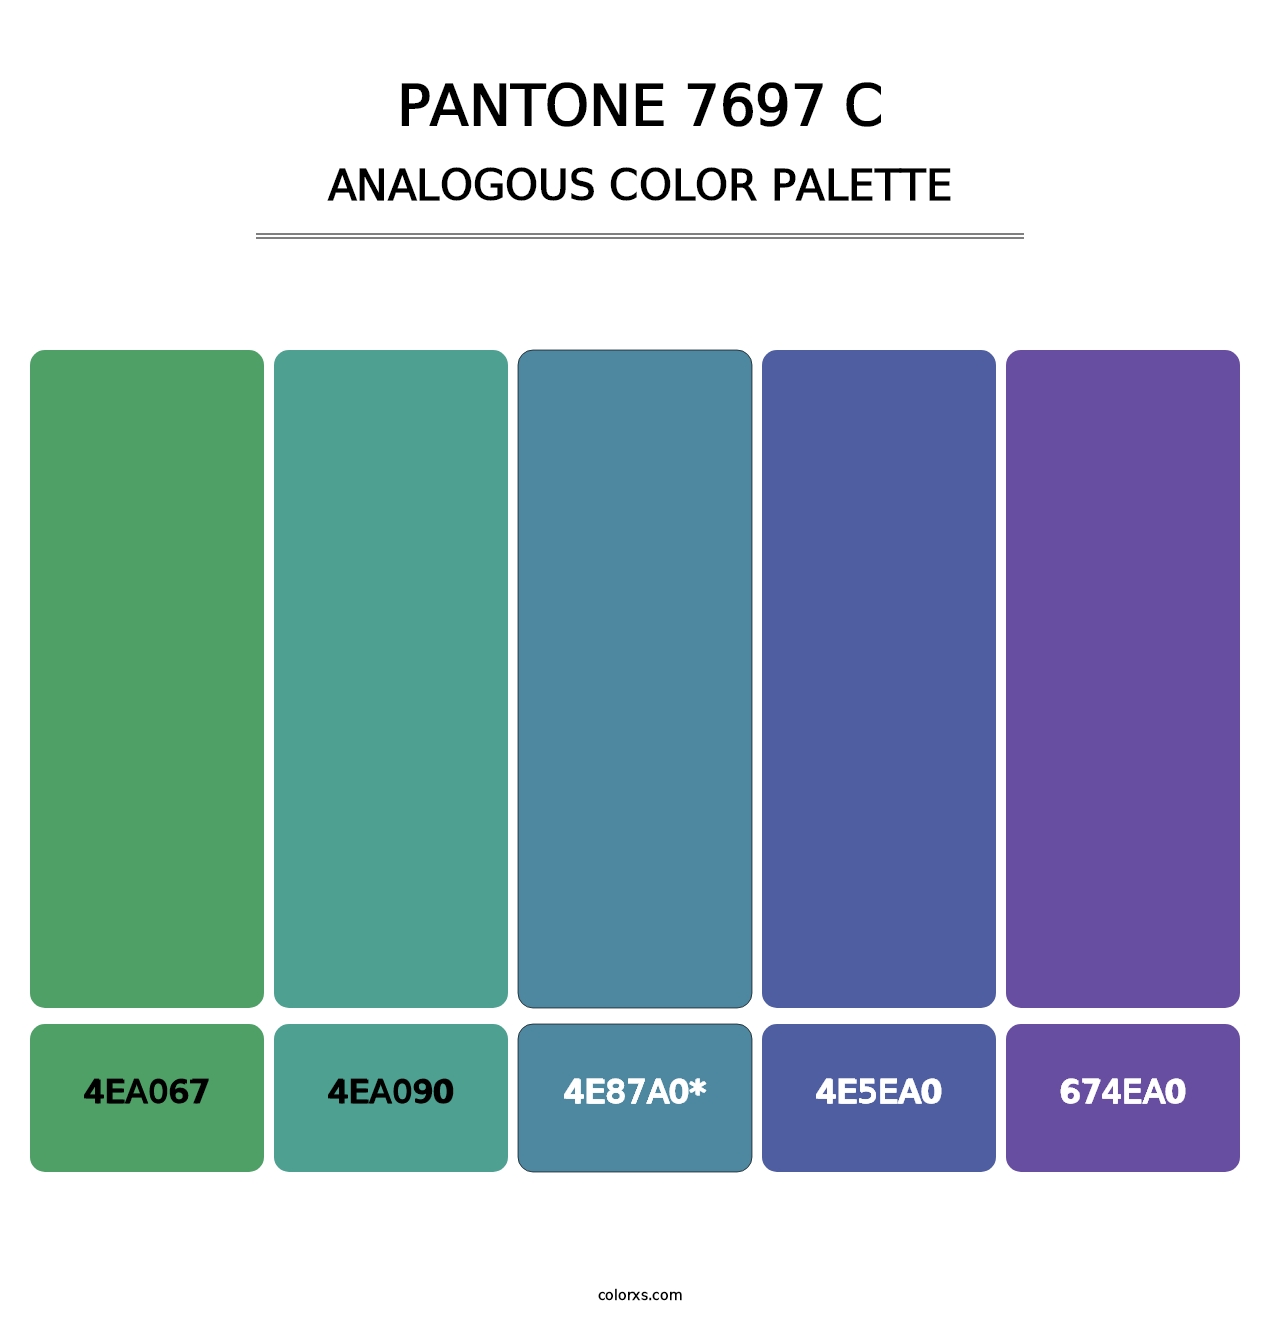 PANTONE 7697 C - Analogous Color Palette